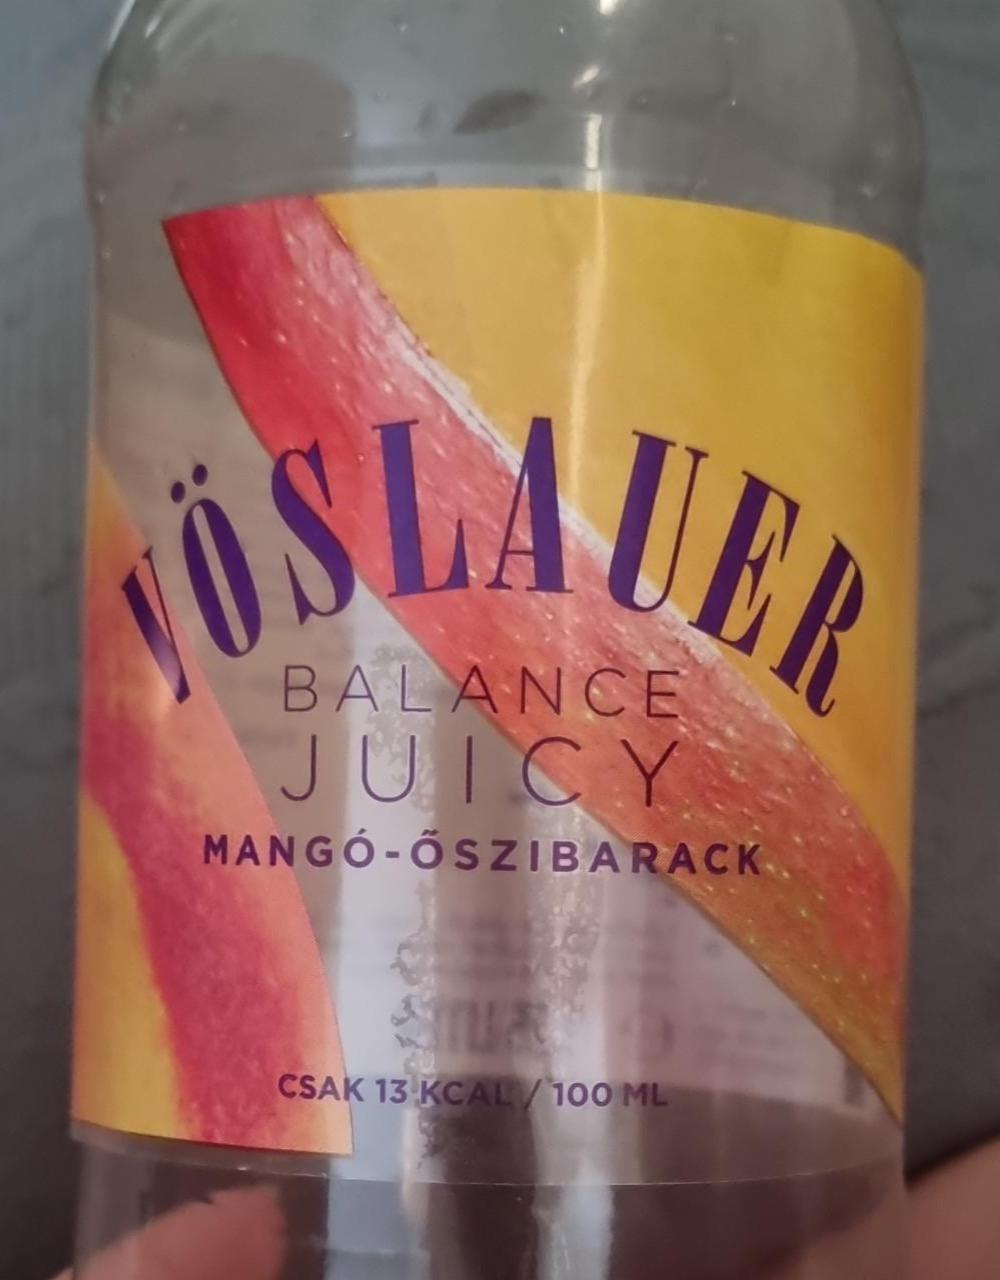 Képek - Vöslauer Balance Juicy mangó-őszibarack ízű üdítőital